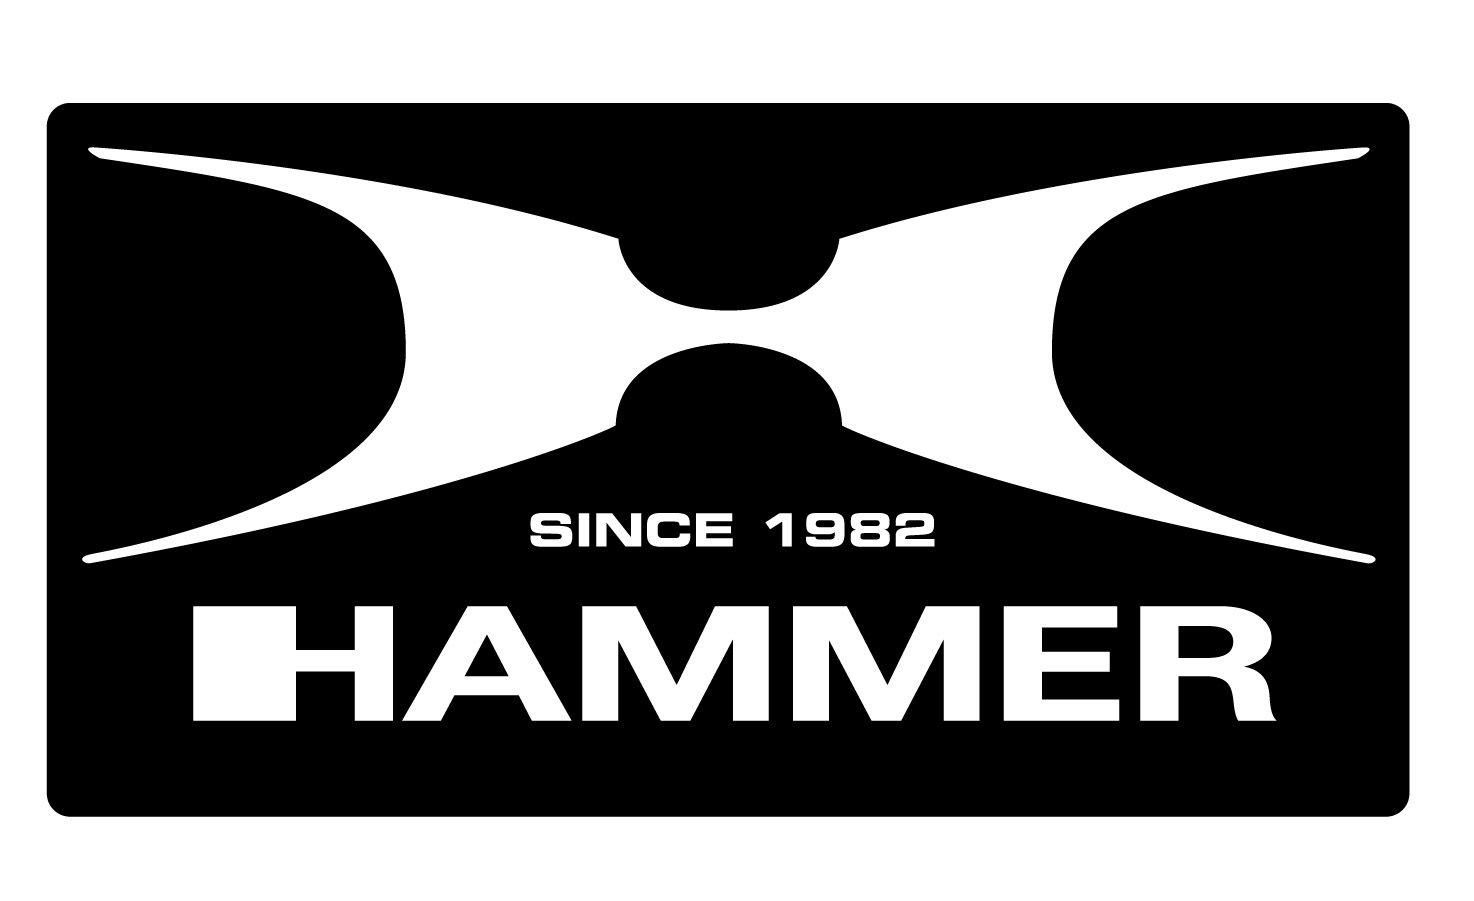 Hammer Logo - File:Hammer H logo.jpg - Wikimedia Commons